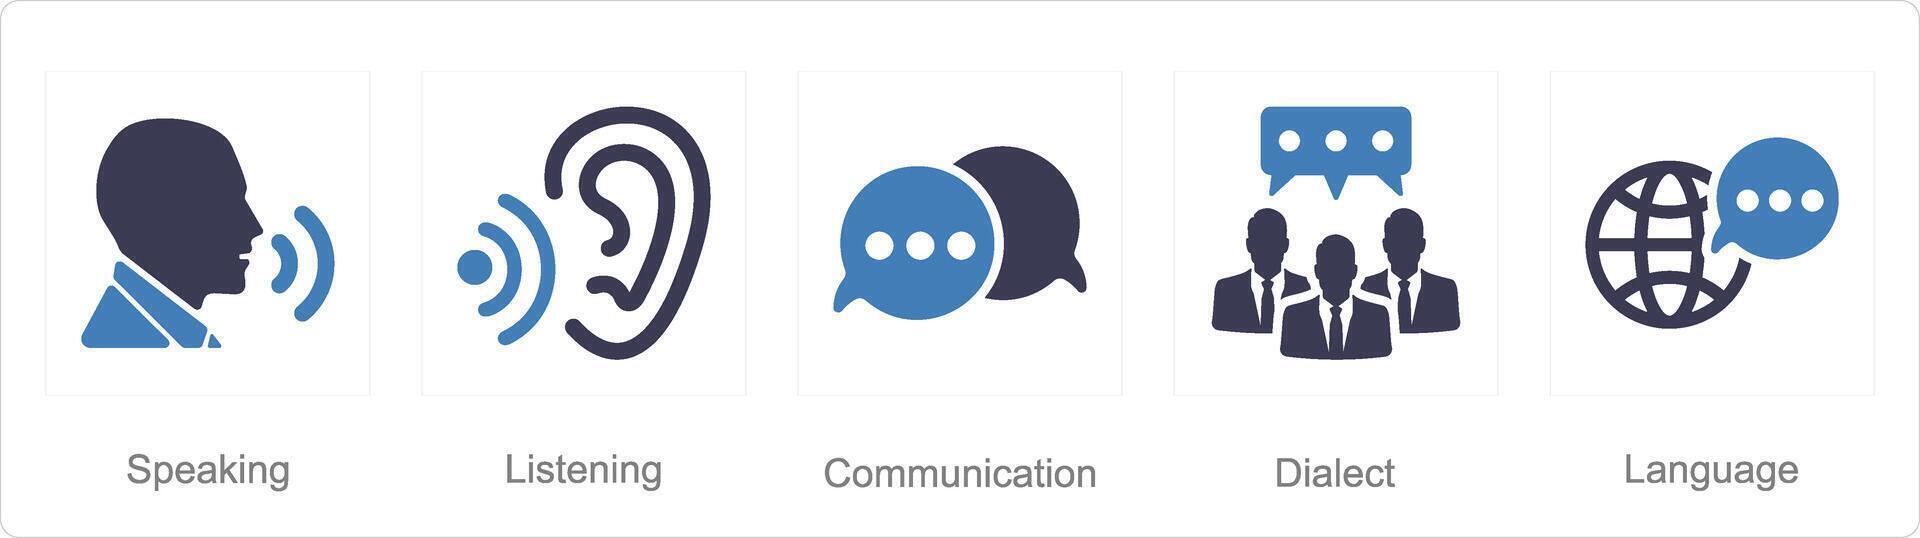 en uppsättning av 5 språk ikoner som tala, lyssnande, kommunikation vektor